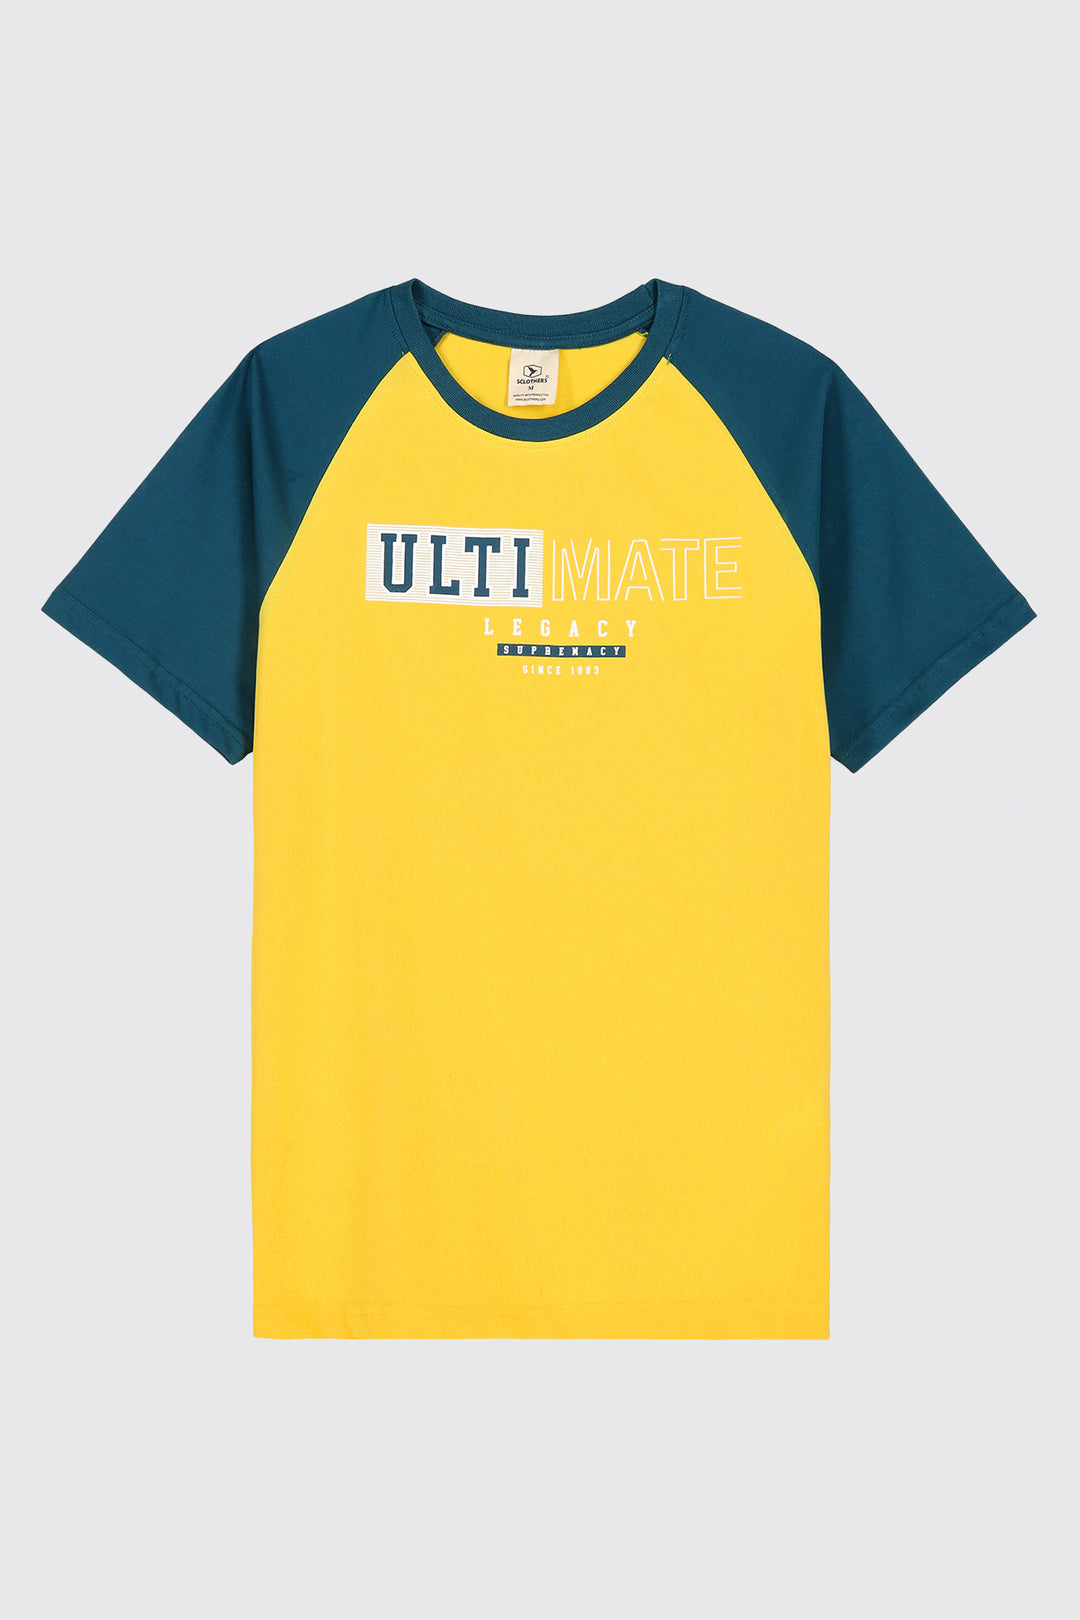 Ultimate Legacy T-Shirt (Plus Size) - A23 - MT0297P